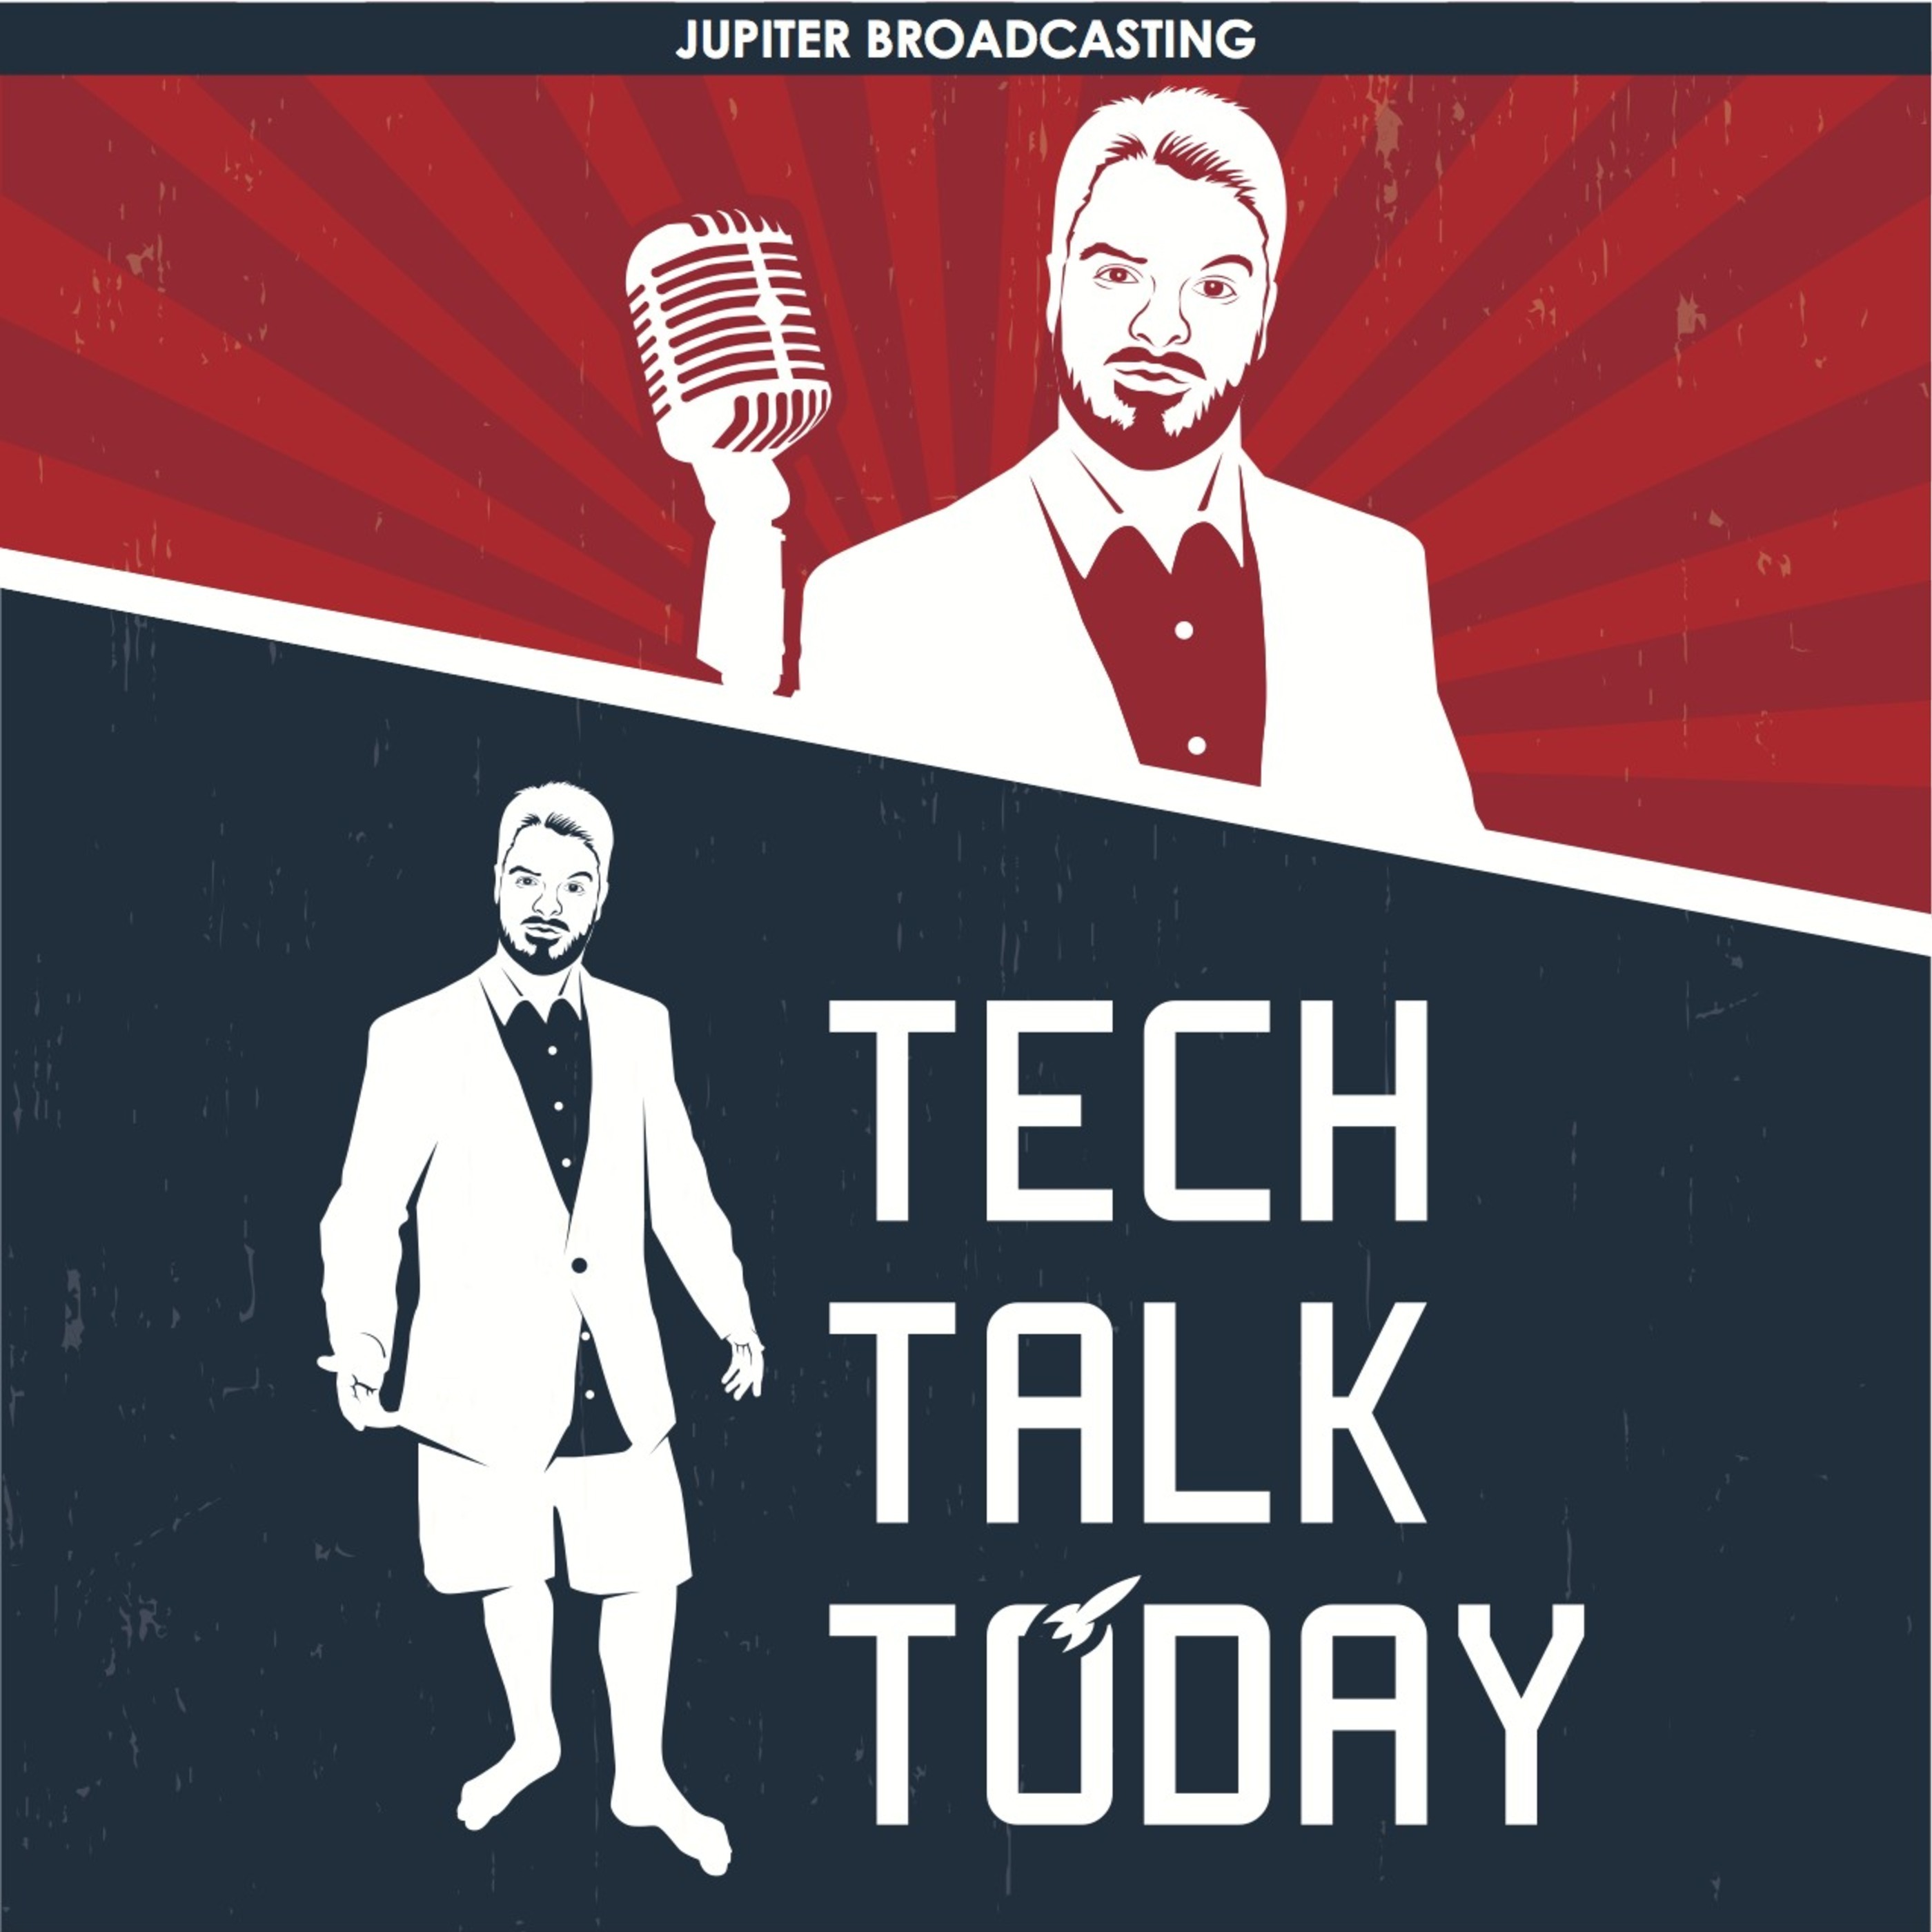 Episode 1: Bitcoin Recession | Tech Talk Today 154